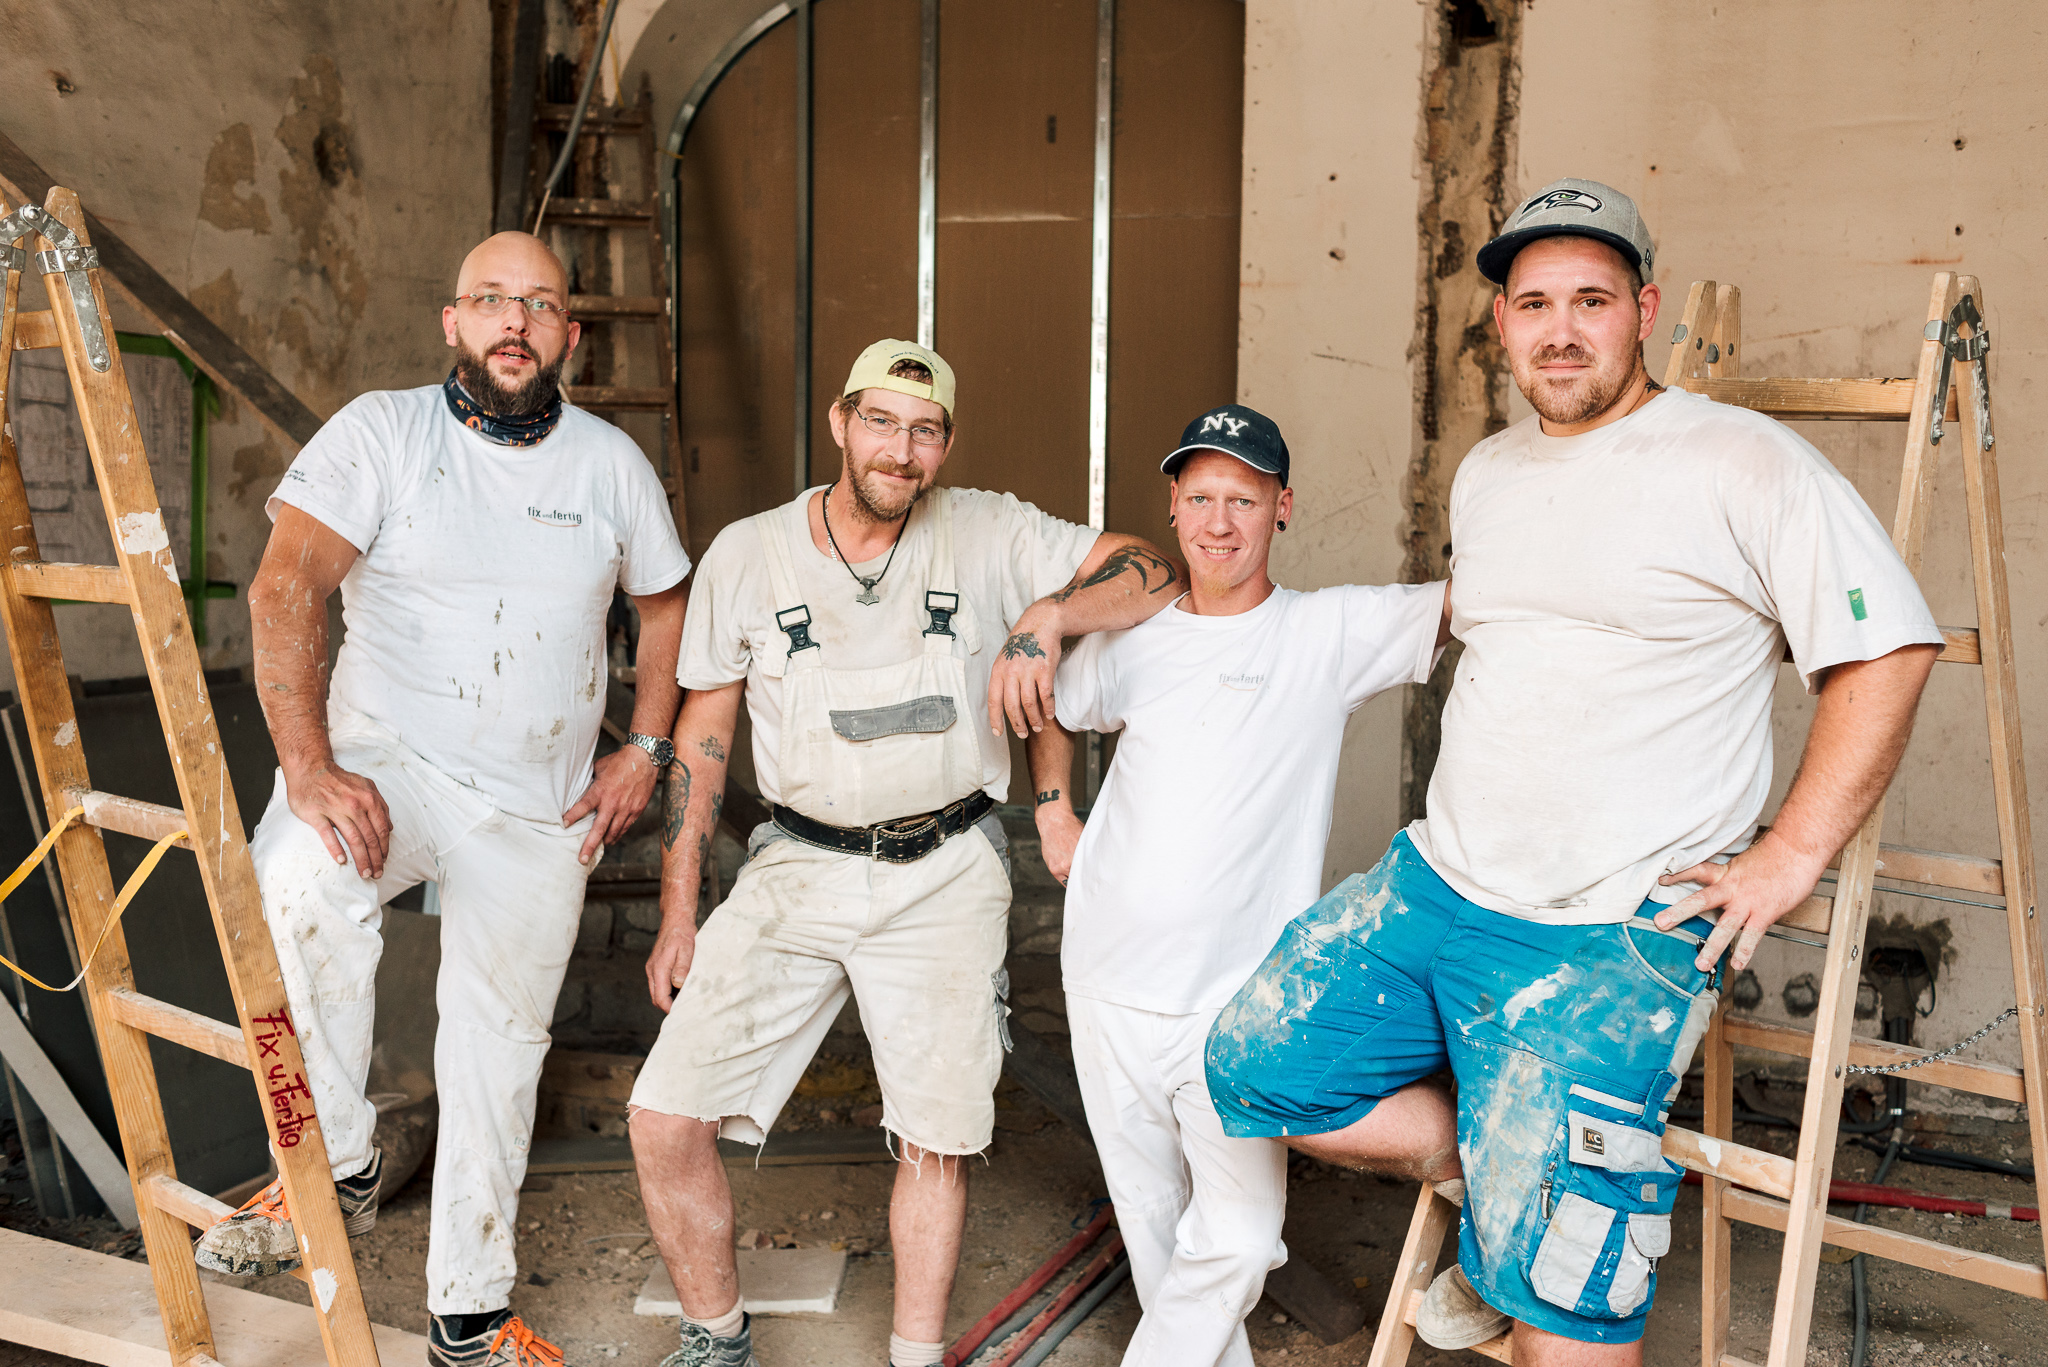 Gruppenbild auf der Baustelle: 4 Bauarbeiter lächeln erschöpft und entspannt in die Kamera